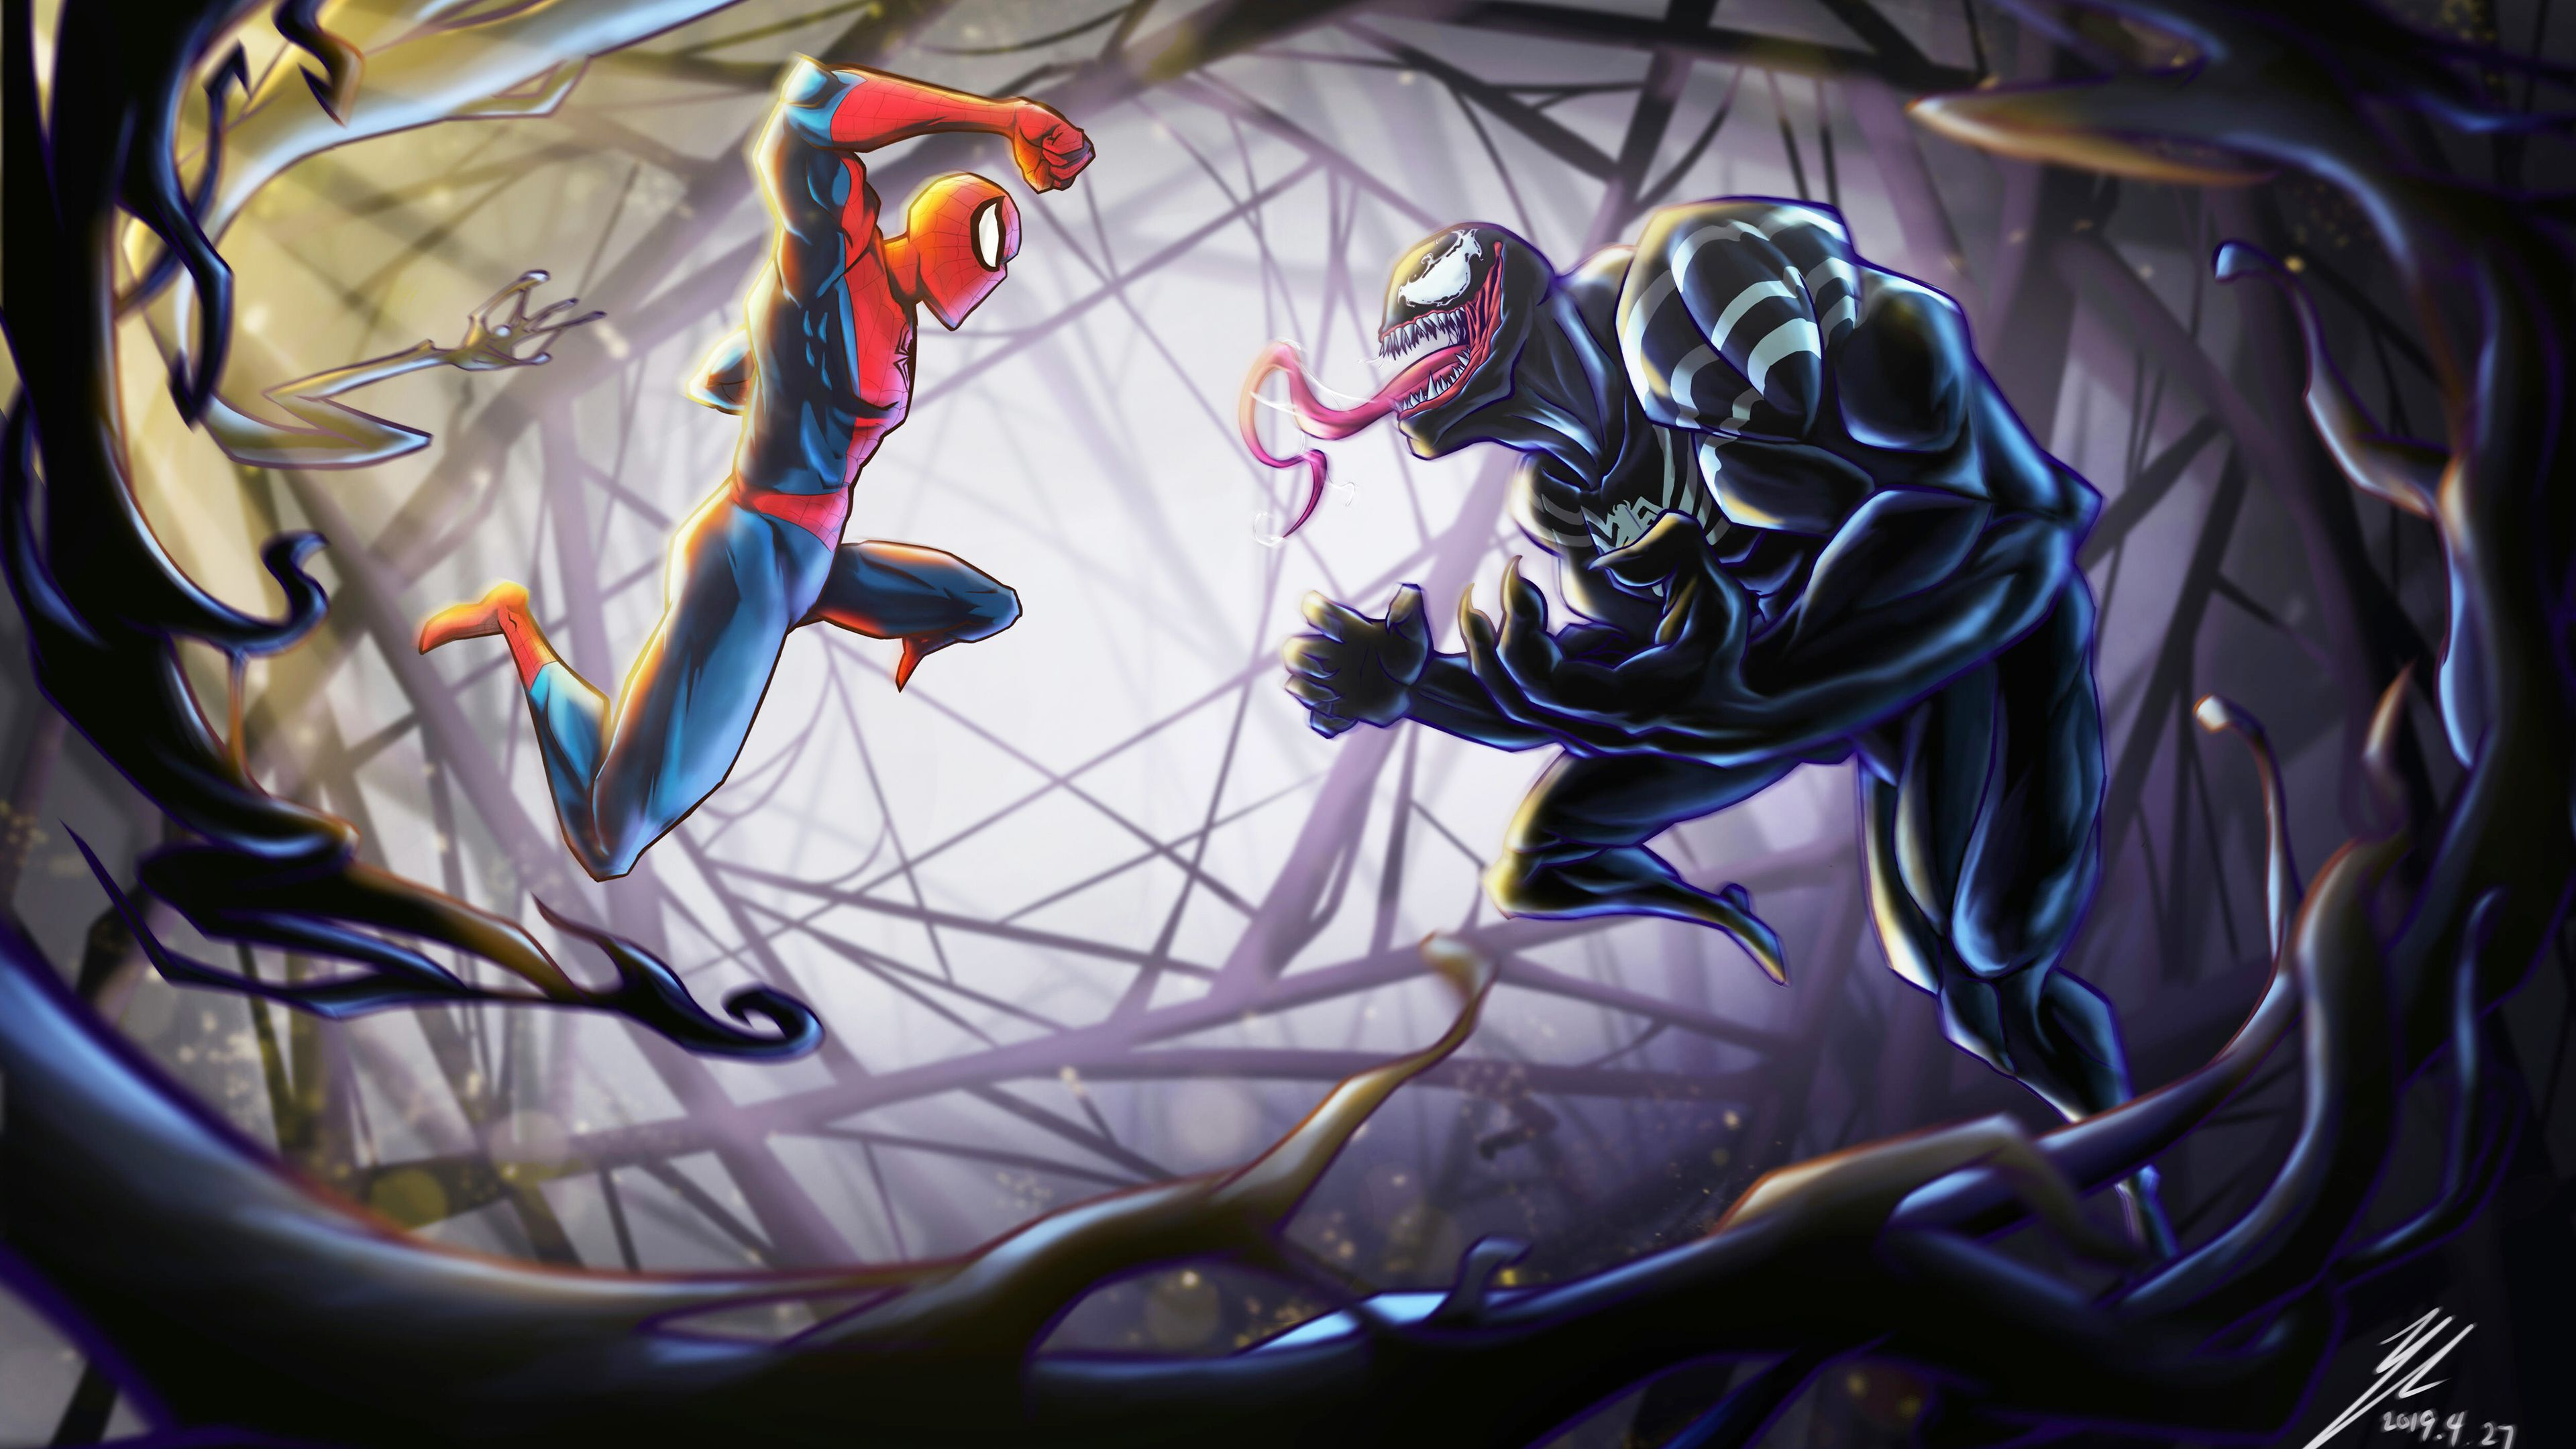 3840x2160 Spiderman Vs Venom 4k Venom wallpapers, supervillain wallpapers, superheroes wallpapers, spiderman wallpapers, hd-wallp&acirc;&#128;&brvbar; | Spiderman, Superhero wallpaper, Wallpaper